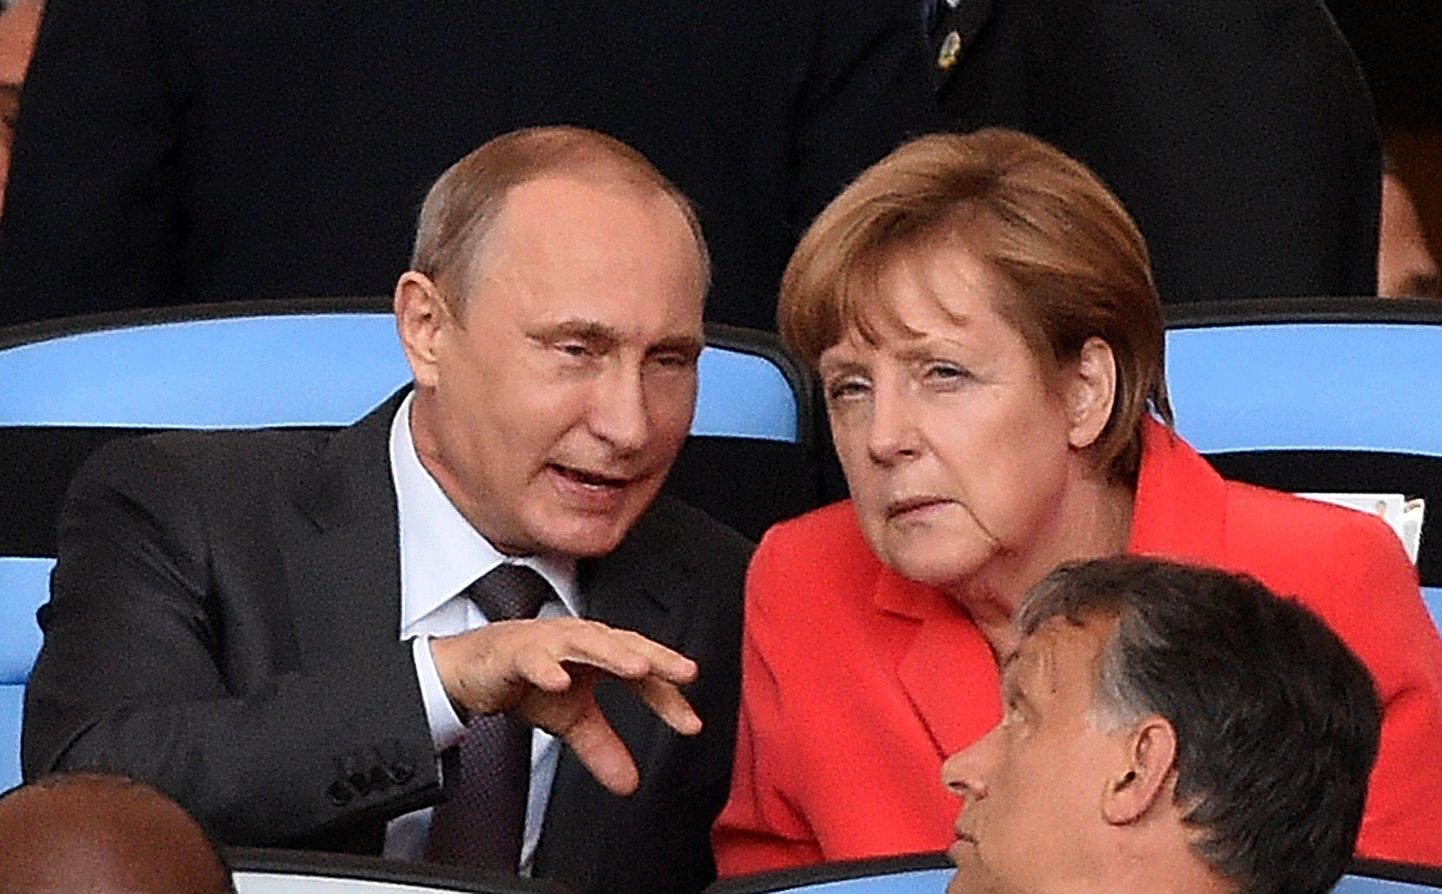 Angela Merkel ja Vladimir Putin